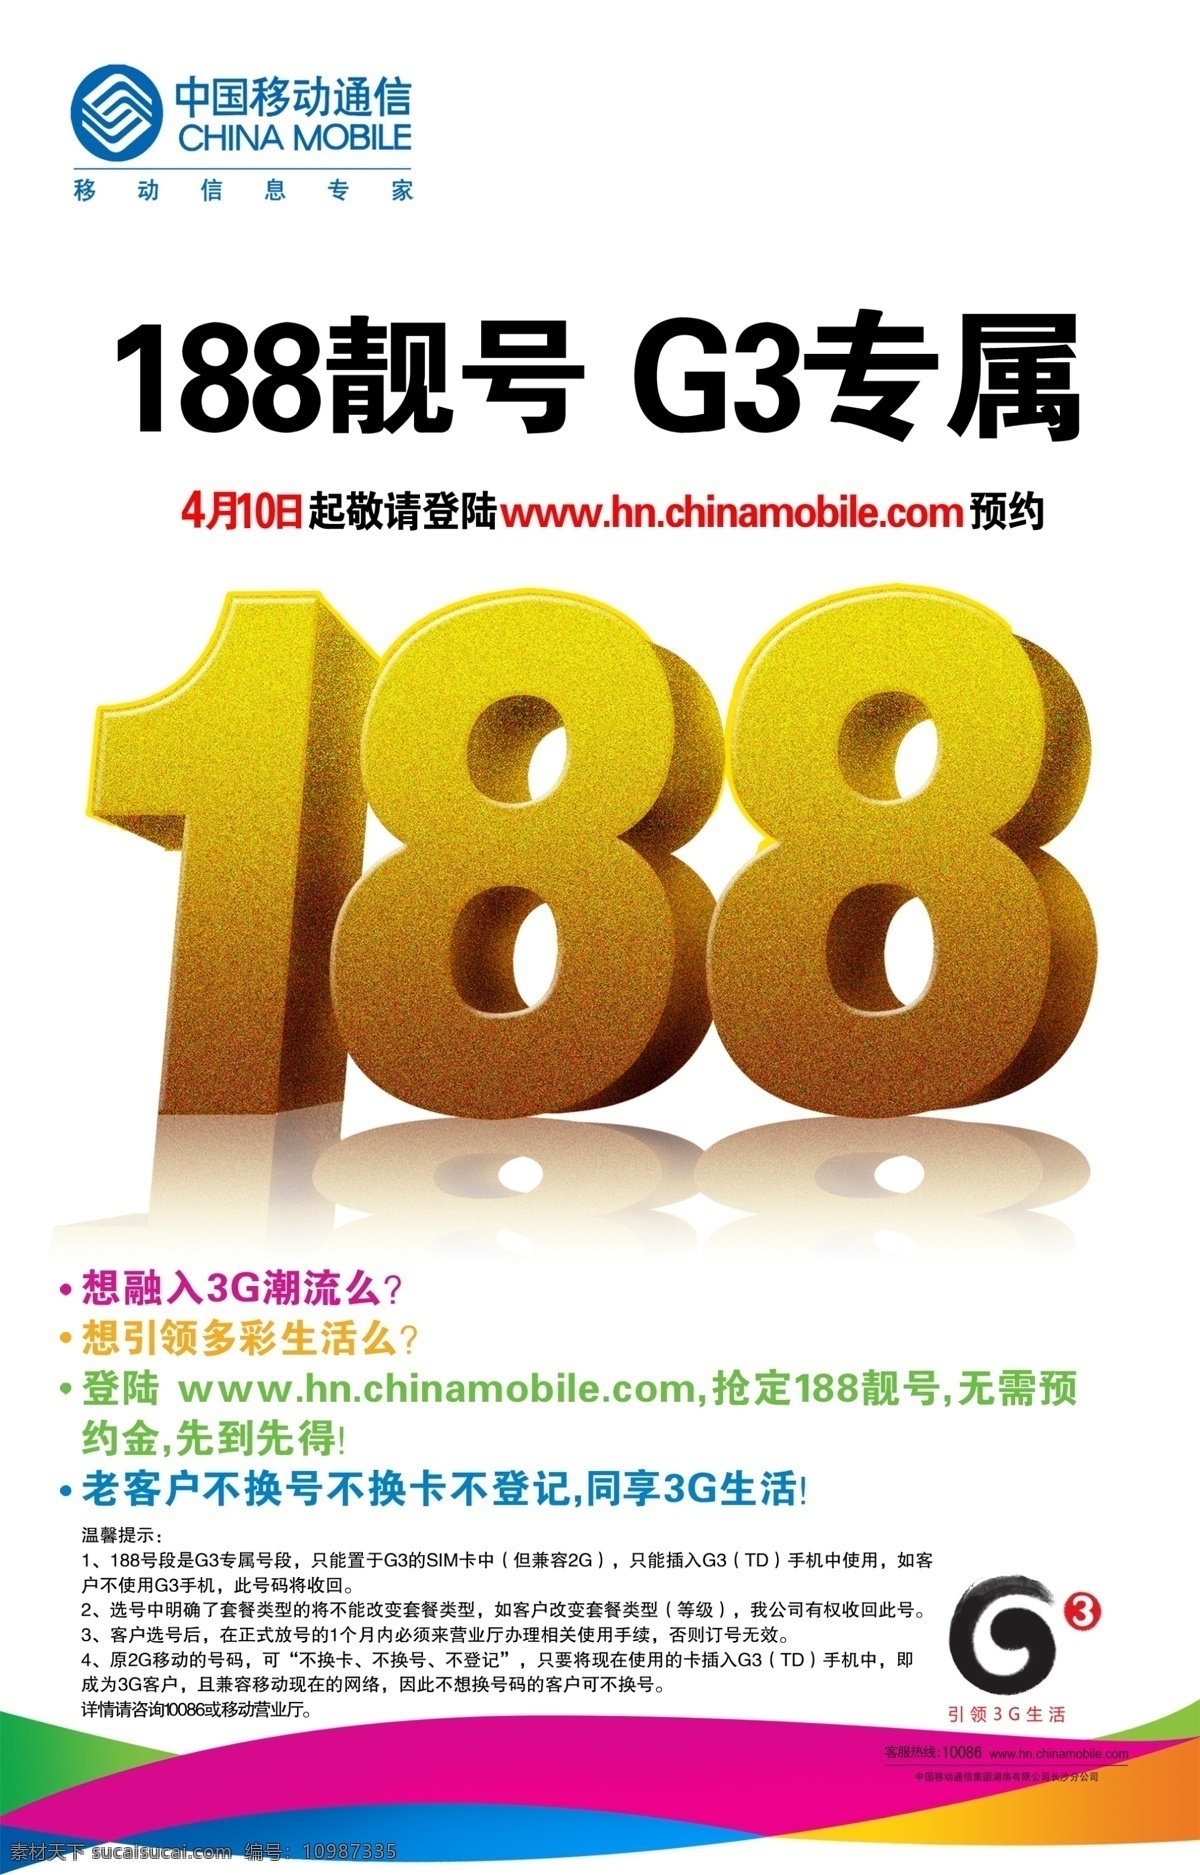 中国移动 3g促销 彩页 移动海报 移动彩页 dm宣传单